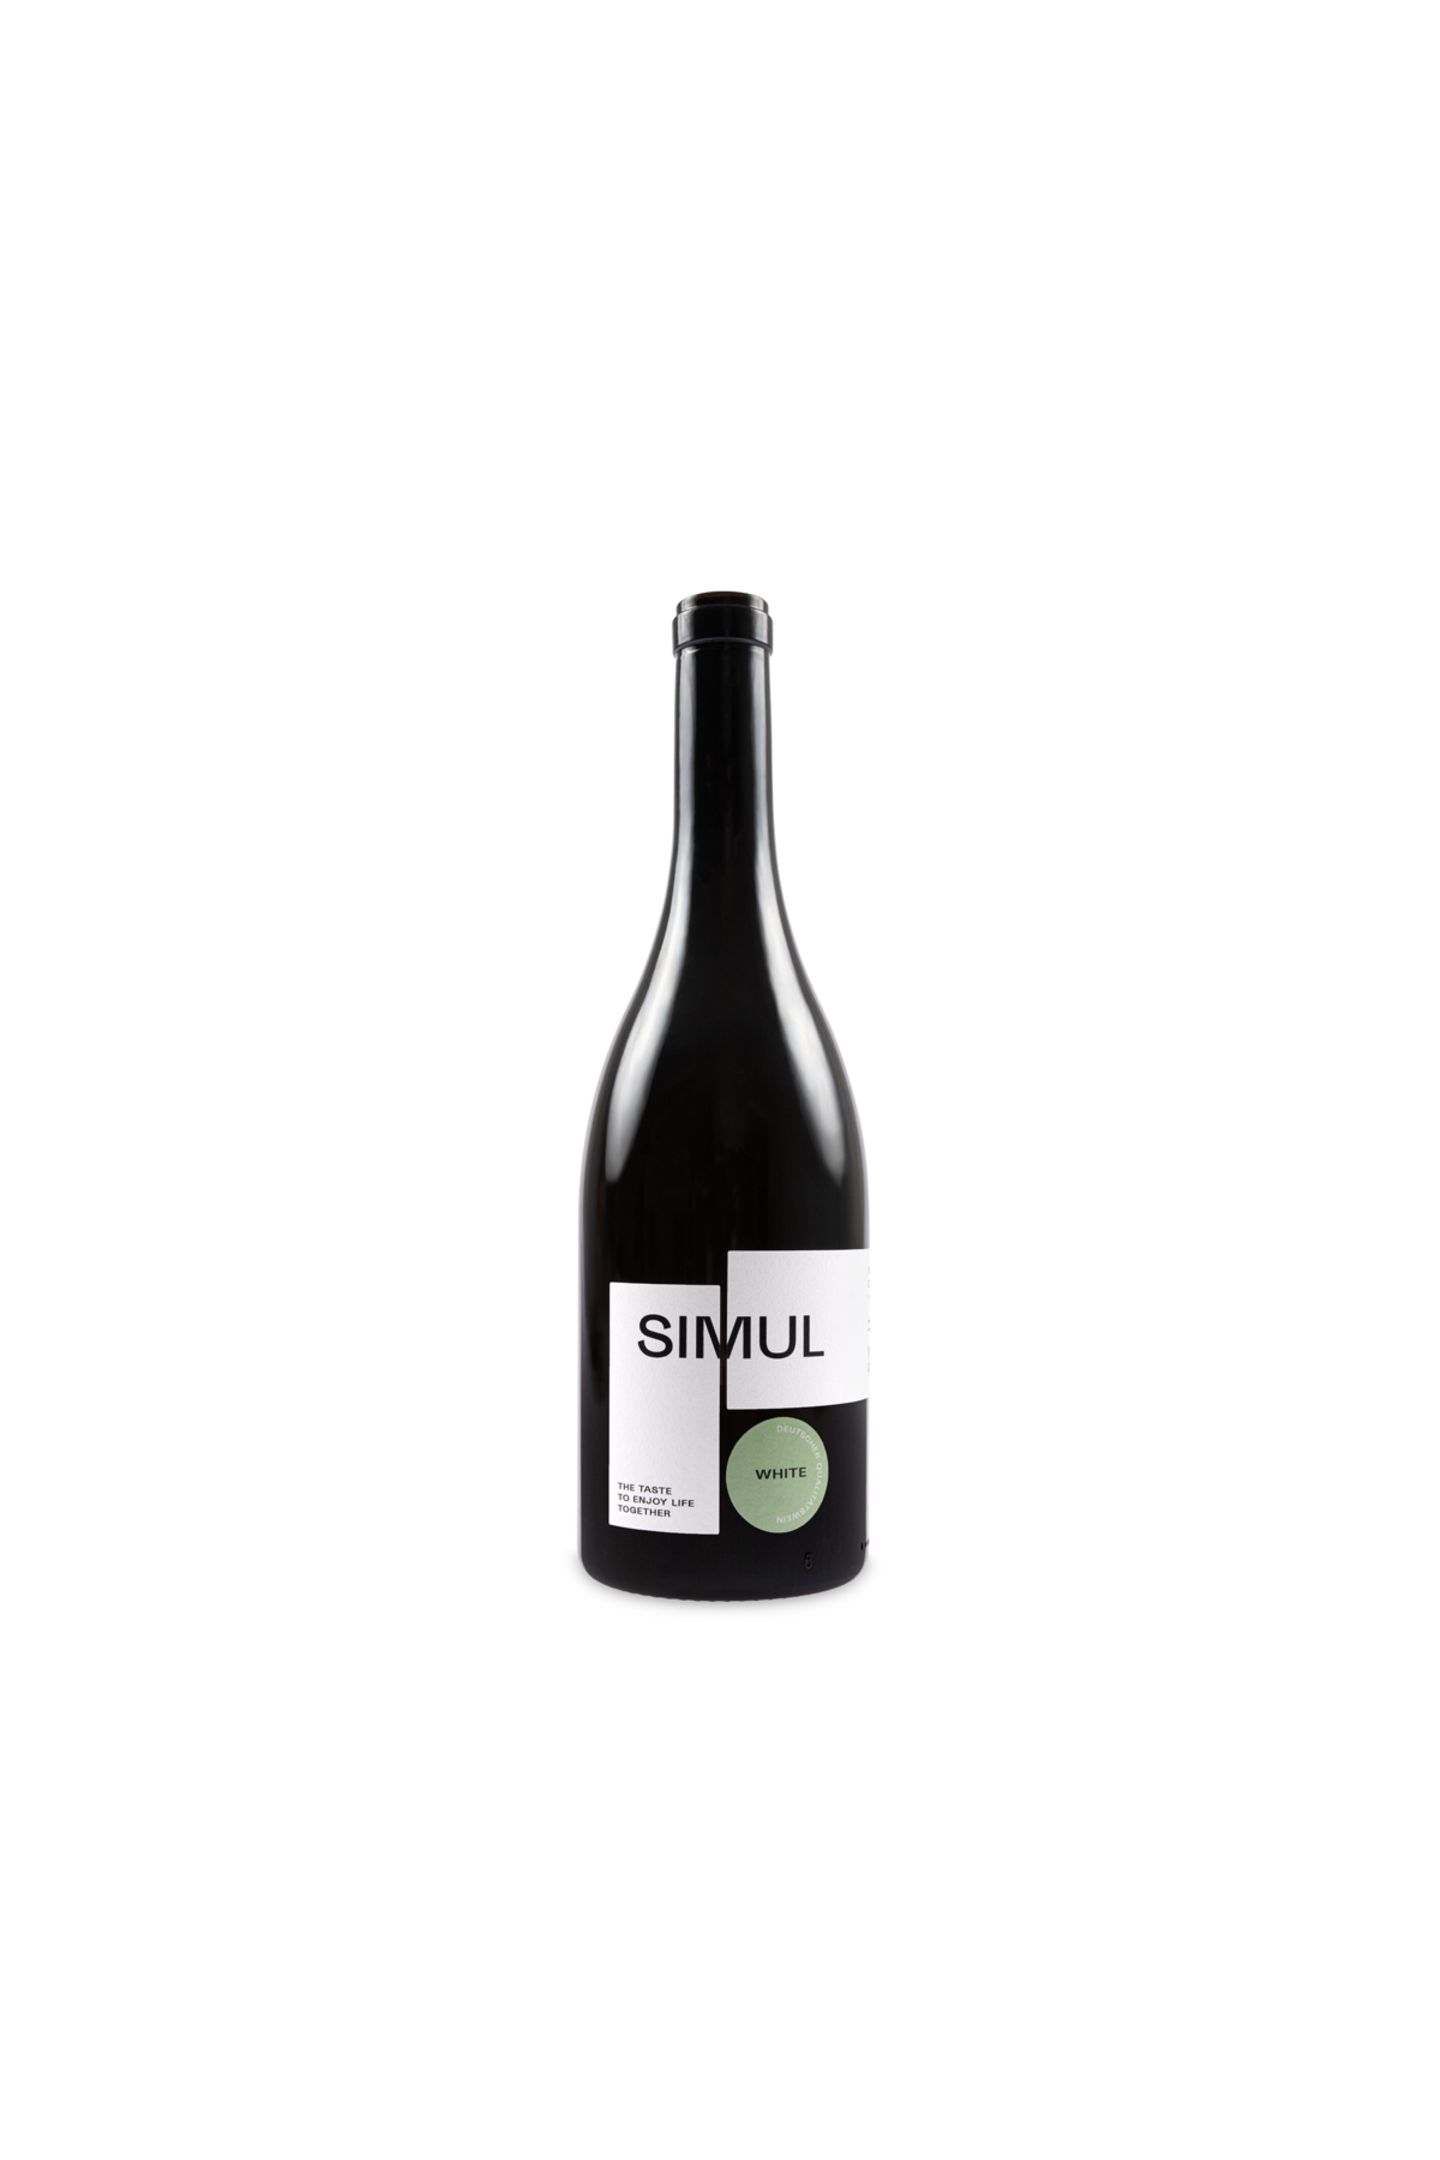 "Simul", das lateinische Wort für "Zusammen", ist dieser Tage das wohl schönste Synonym für Liebe – klasse, dass das limitierte Cuvée der gleichnamigen Weinmarke noch dazu fantastisch schmeckt. Weißwein von Simul, ca. 21 Euro